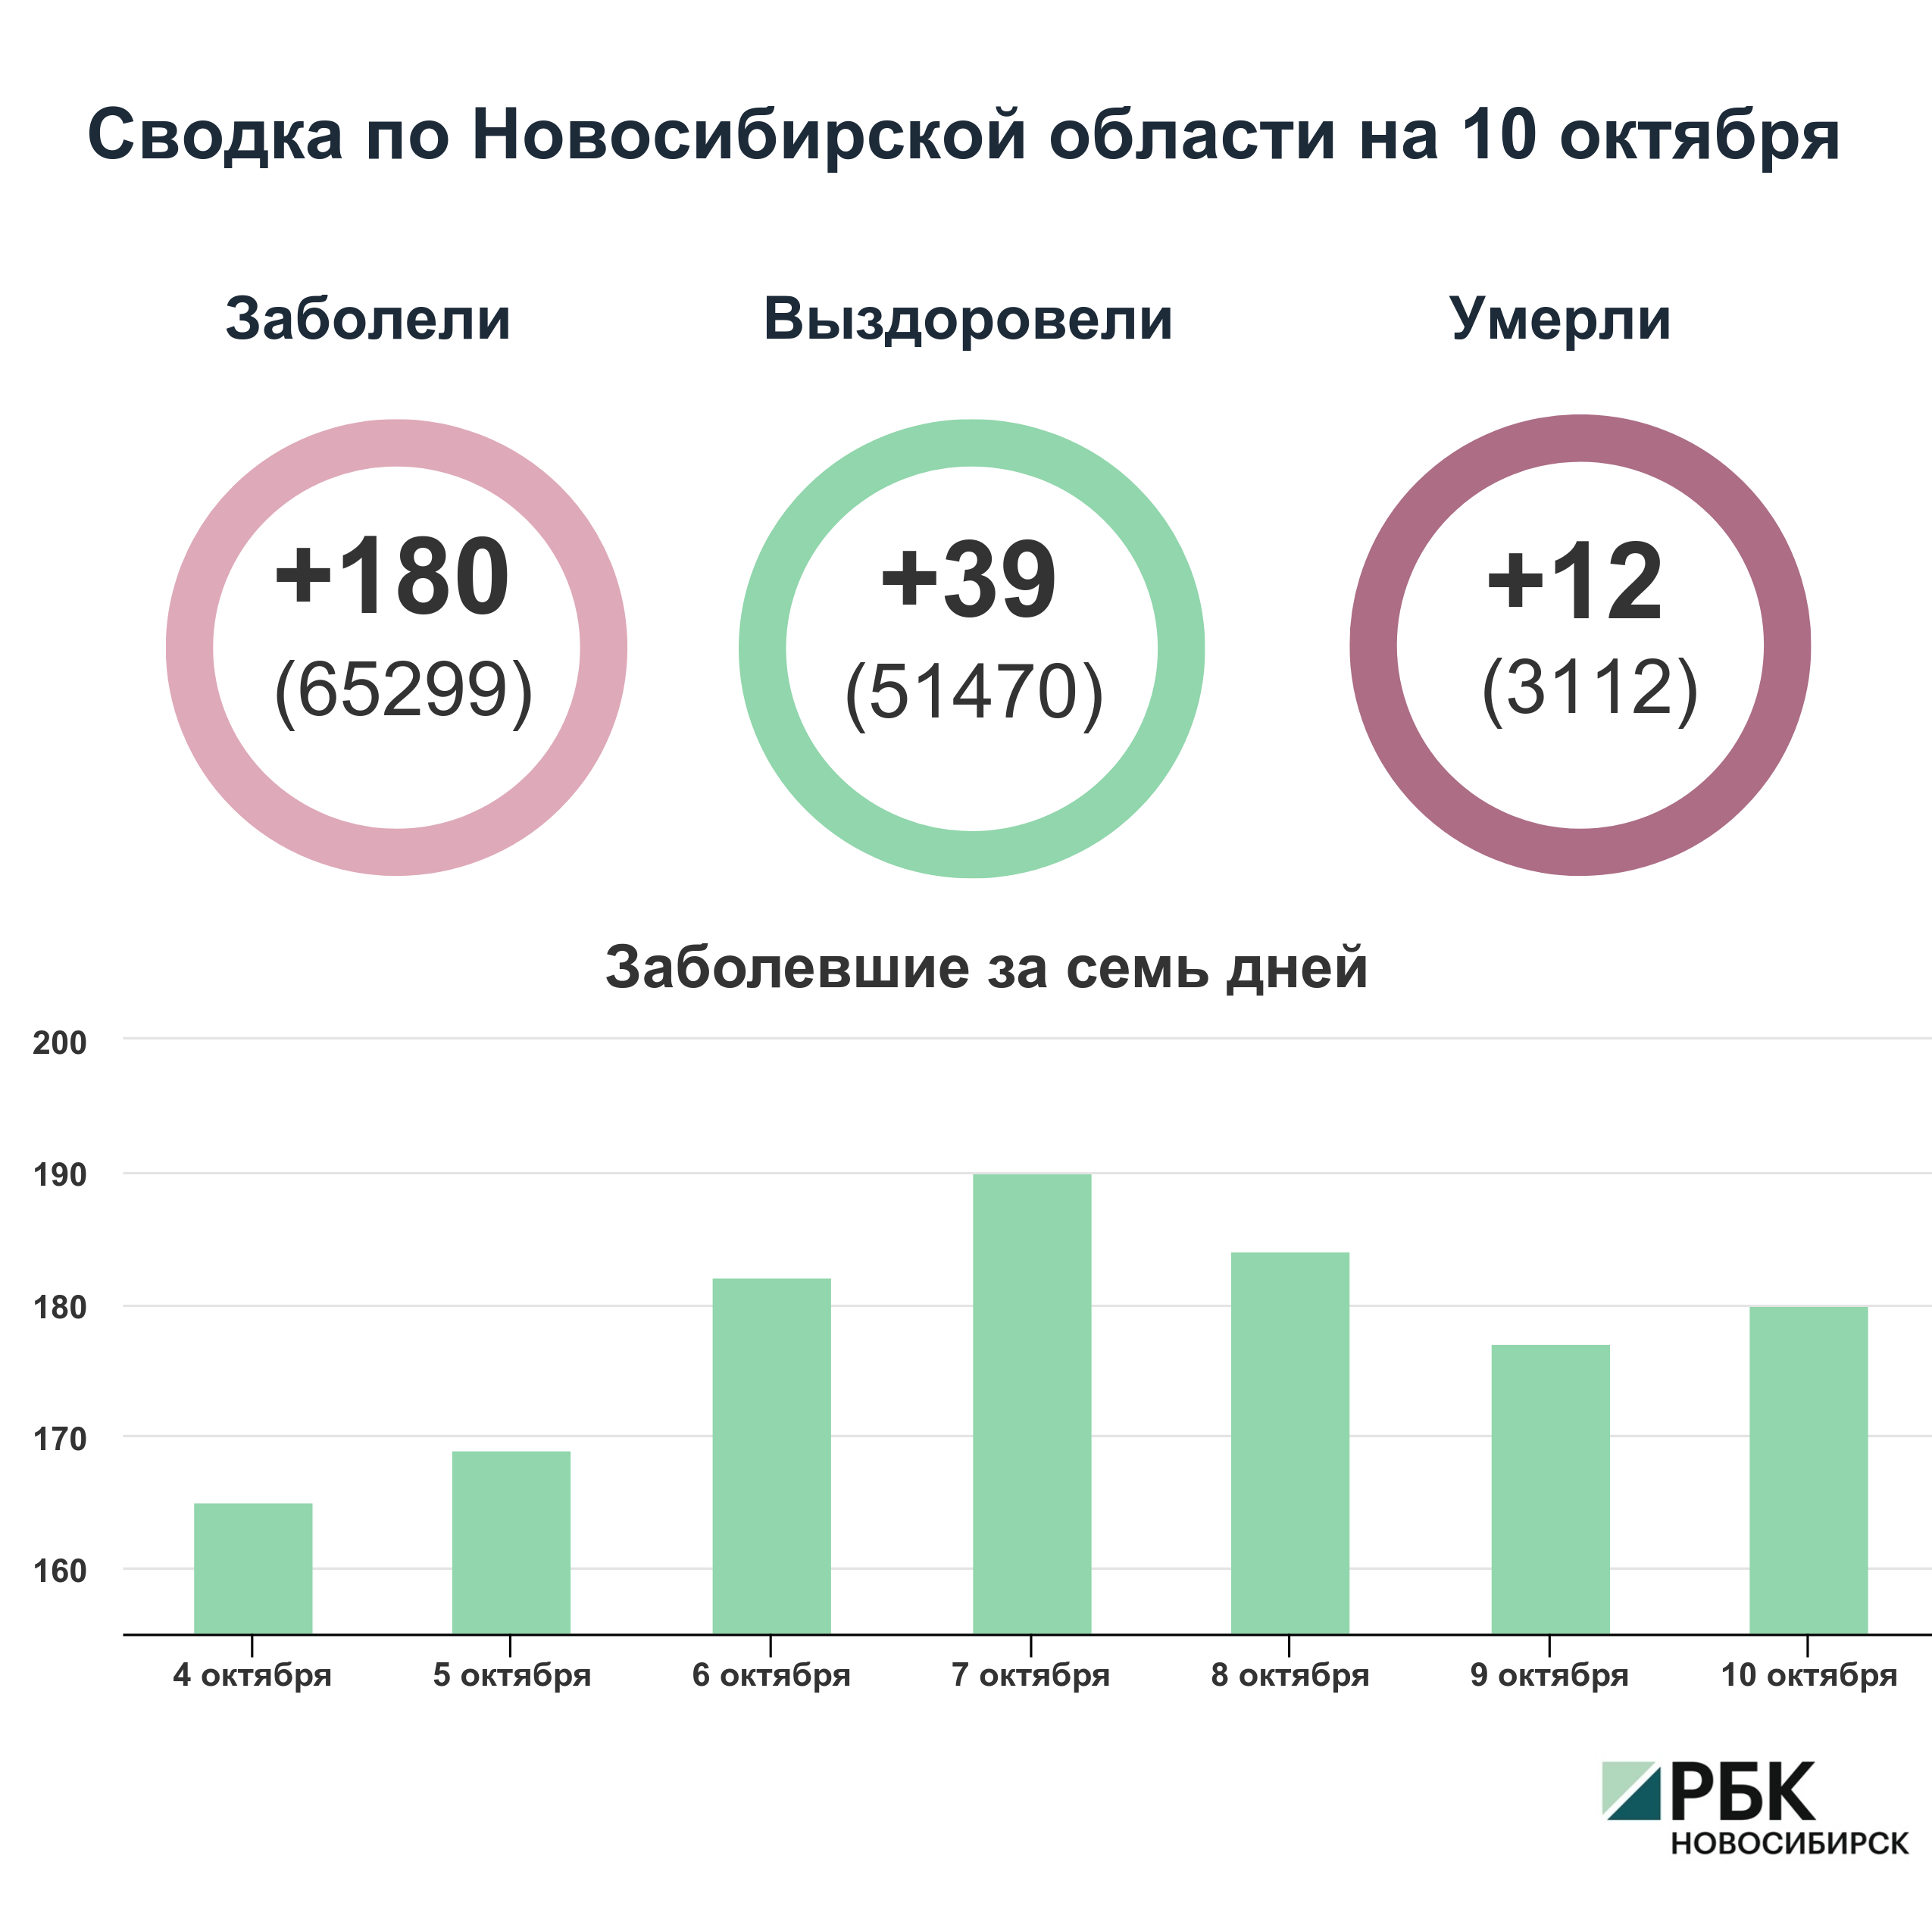 Коронавирус в Новосибирске: сводка на 10 октября